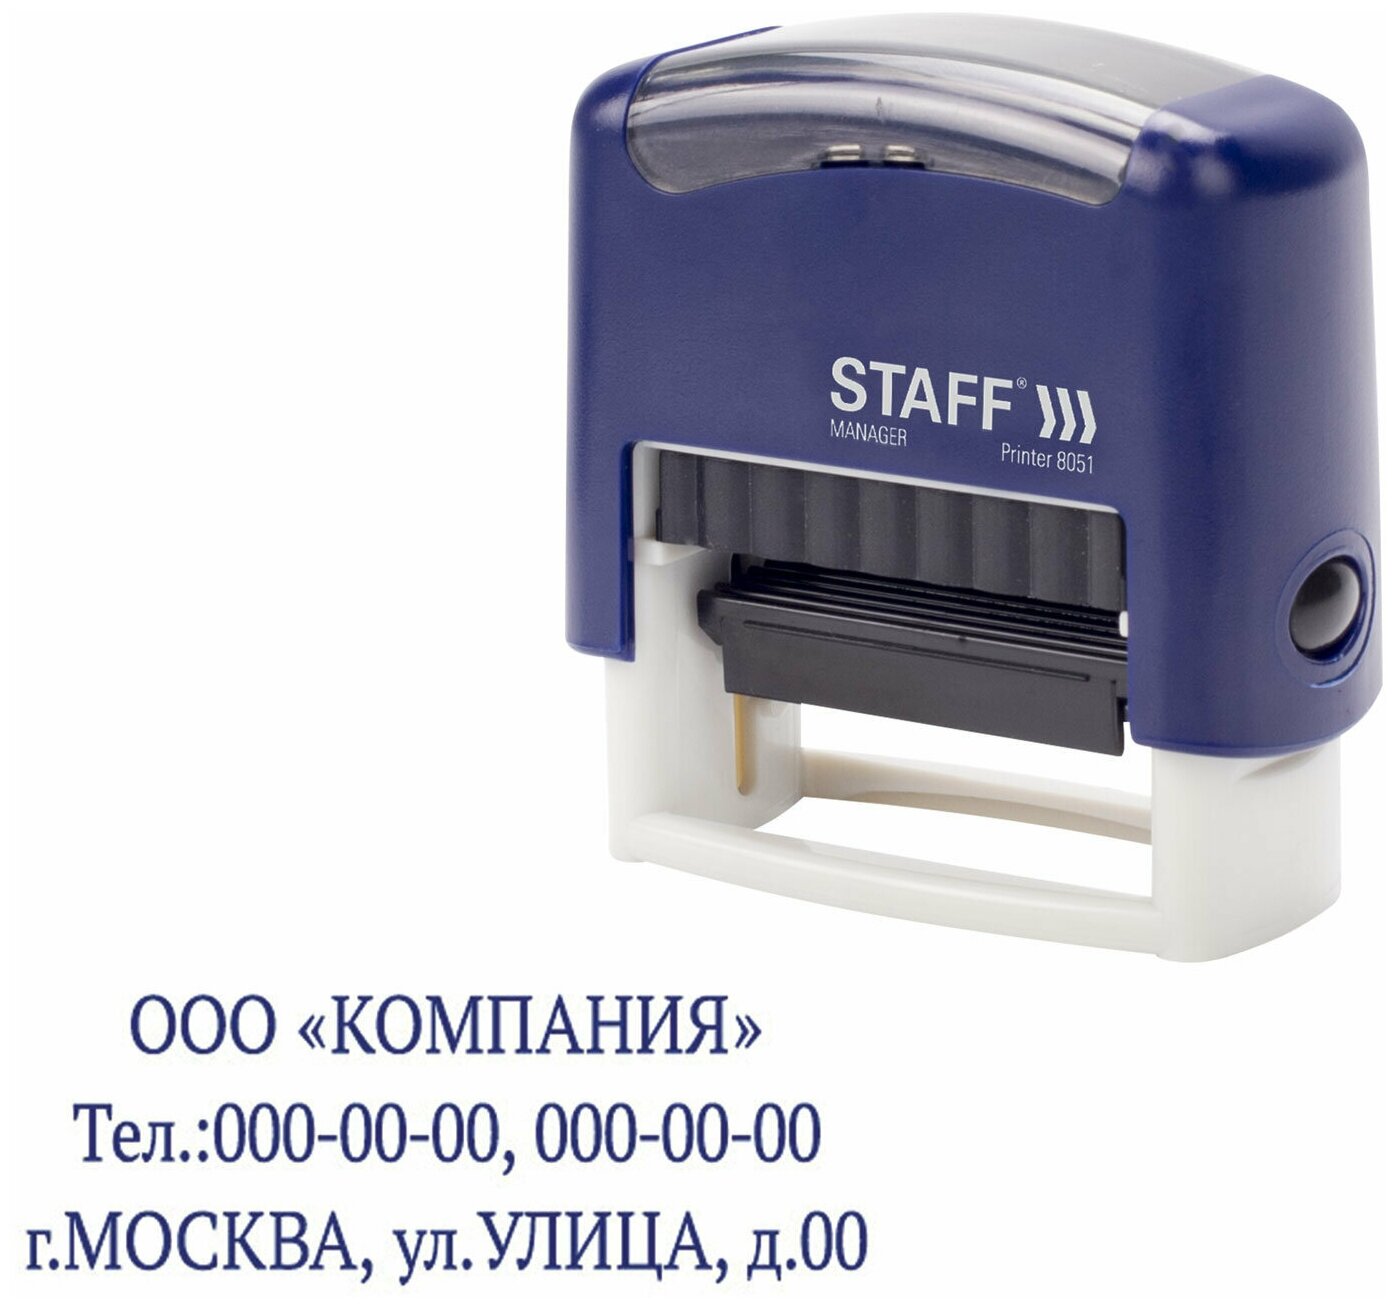 Штамп самонаборный 3-строчный STAFF, оттиск 38х14 мм, «Printer 8051», касса В комплекте, 237423